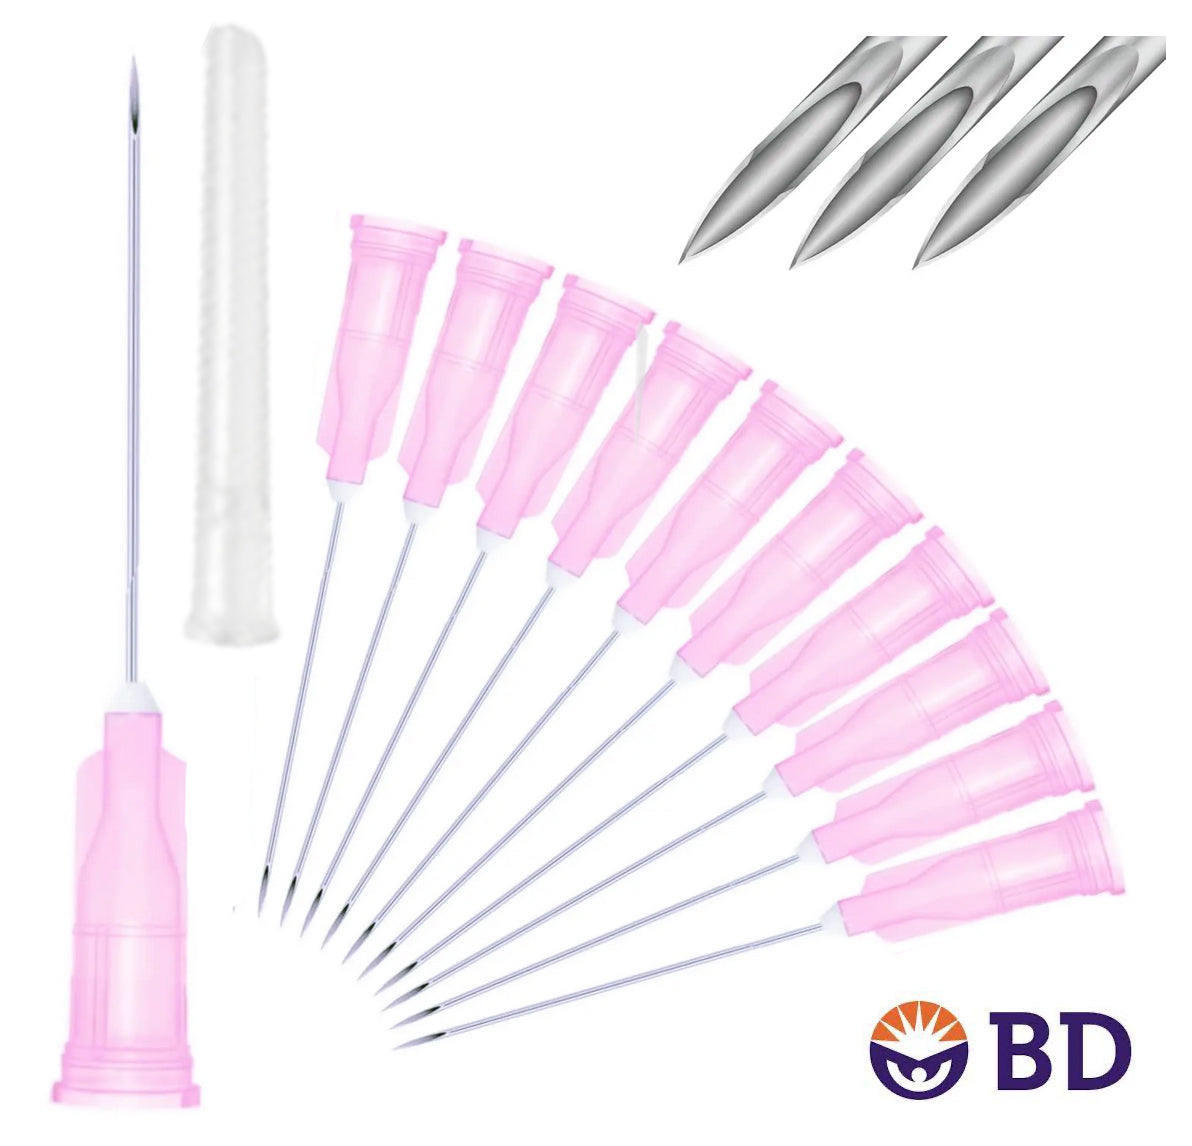 BD 18G x 1" Medical Needle (10pk)